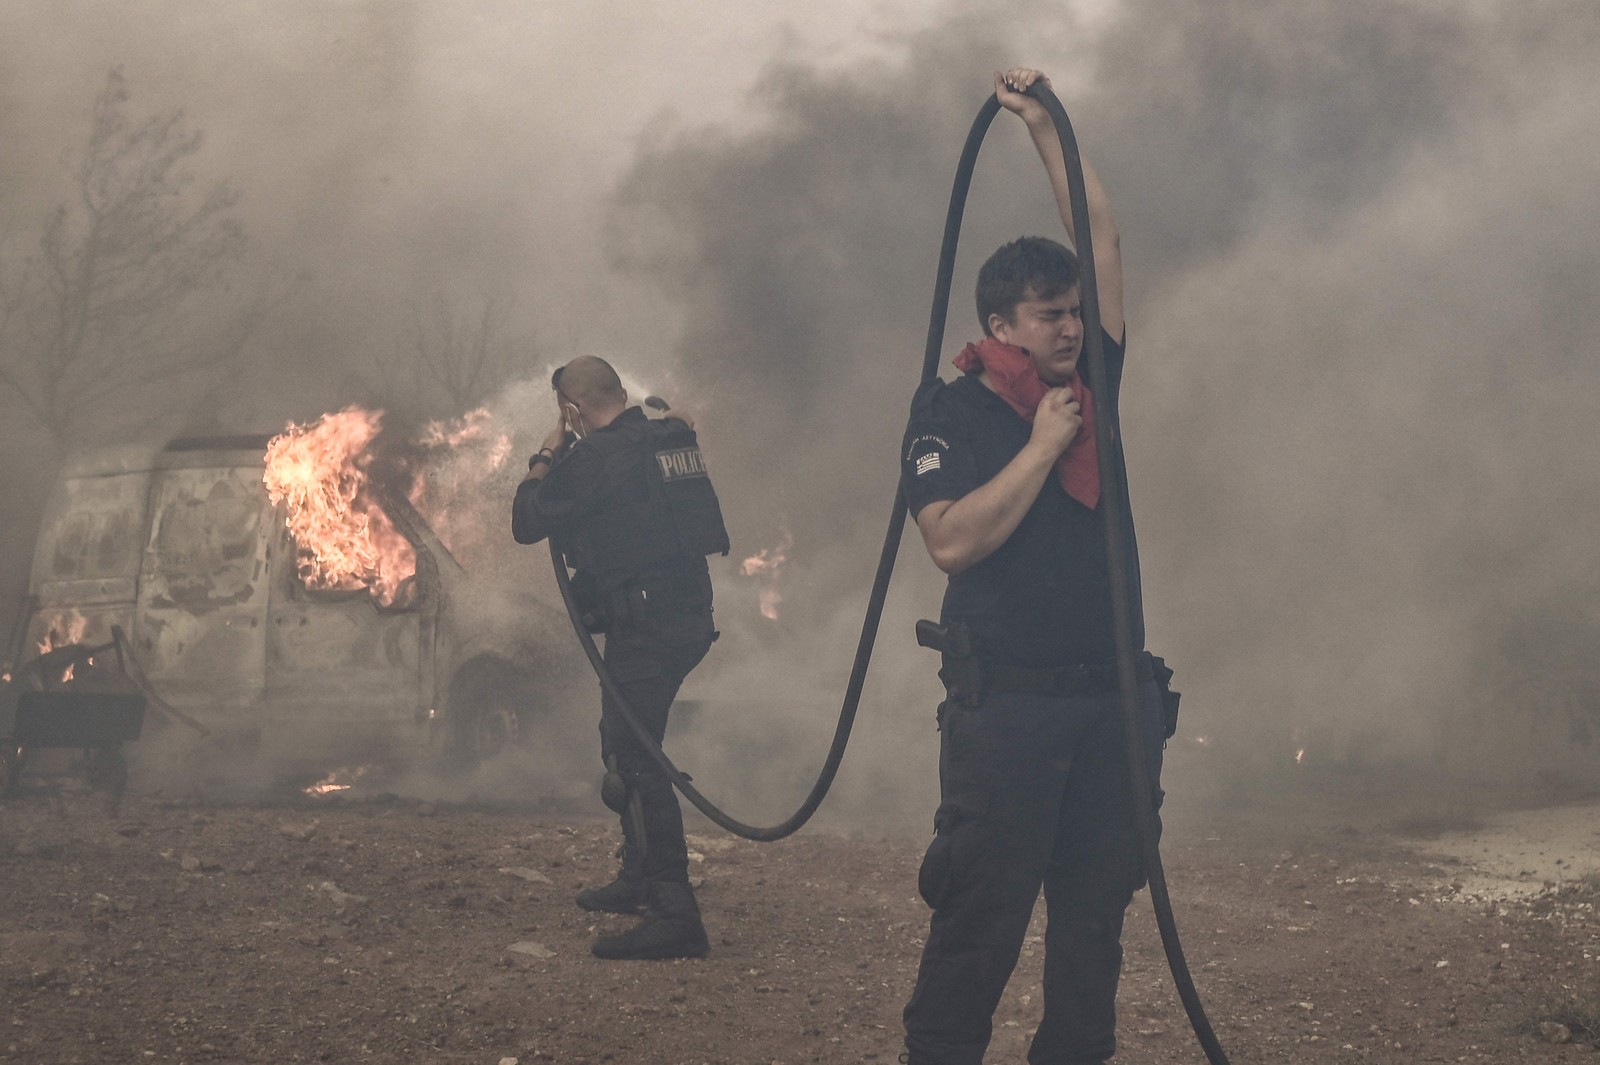 Policiais combatem o incêndio na área de Lagonisi, a cerca de 35km de Atenas. A polícia grega prendeu um homem suspeito de iniciar um incêndio florestal em andamento perto de Atenas, alimentado pela onda de calor e ventos fortes, disseram os bombeiros. — Foto: Spyros BAKALIS / AFP